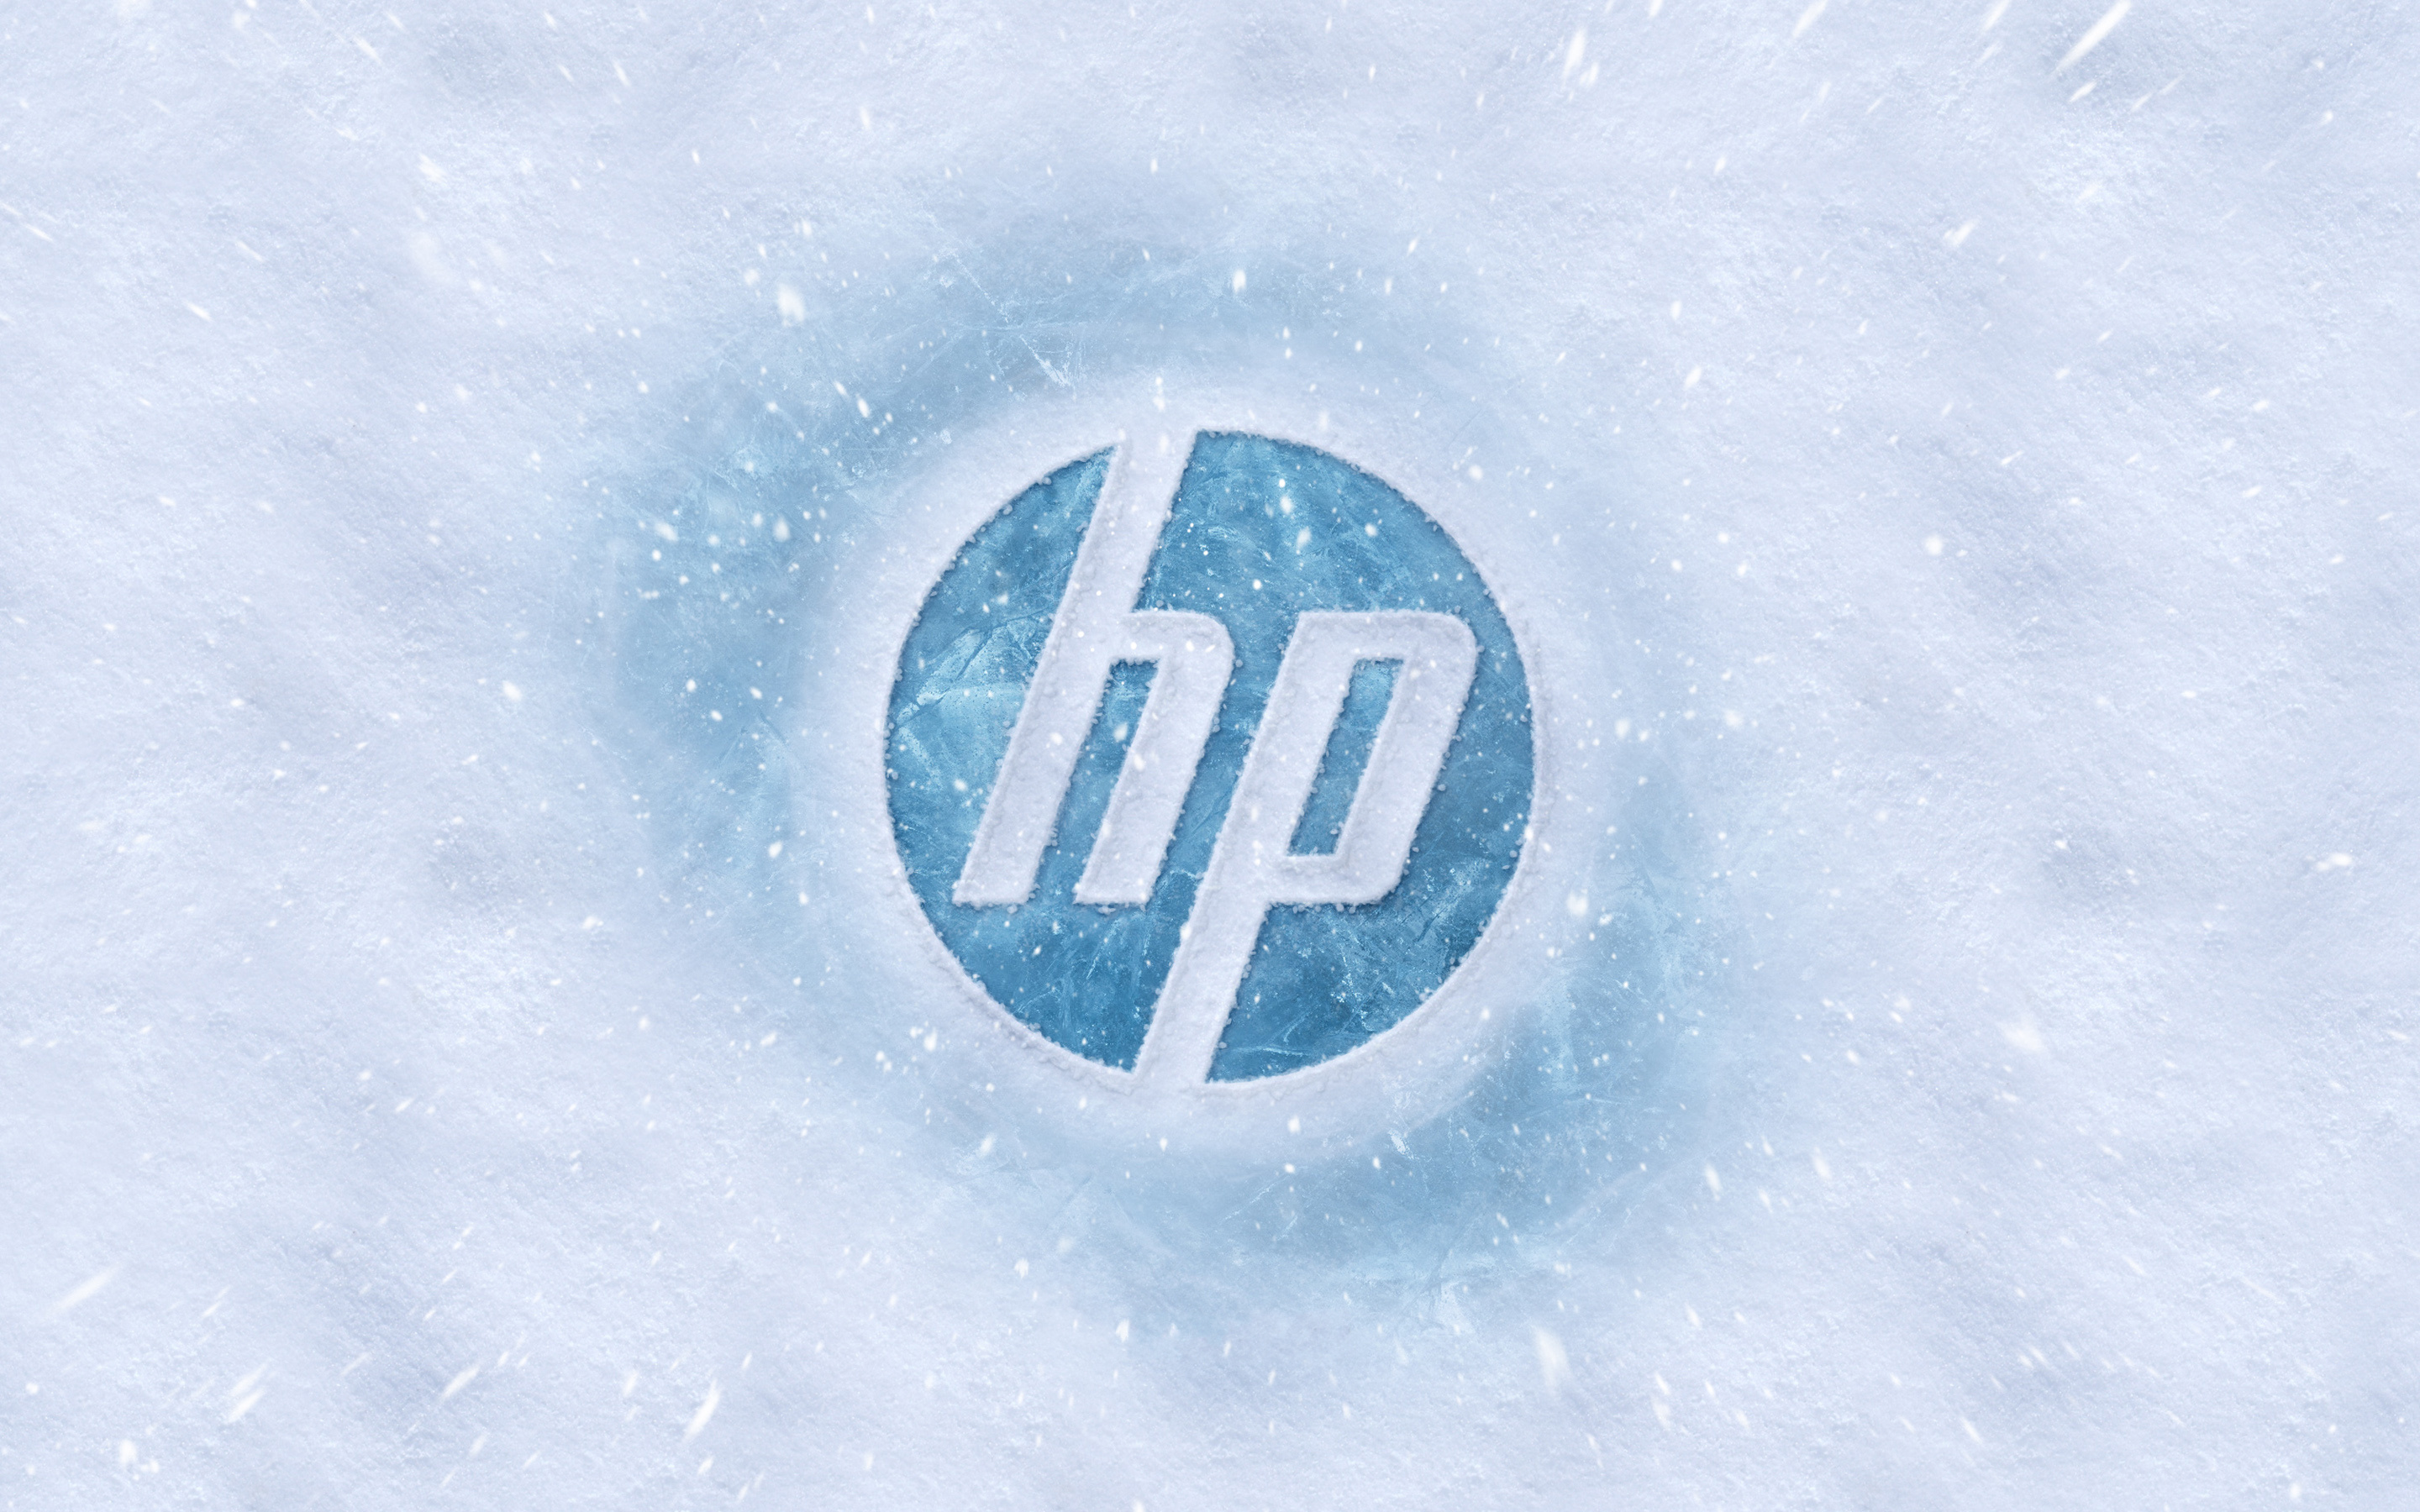 HP, Technology brand, HP desktop wallpaper, Top free backgrounds, 2880x1800 HD Desktop